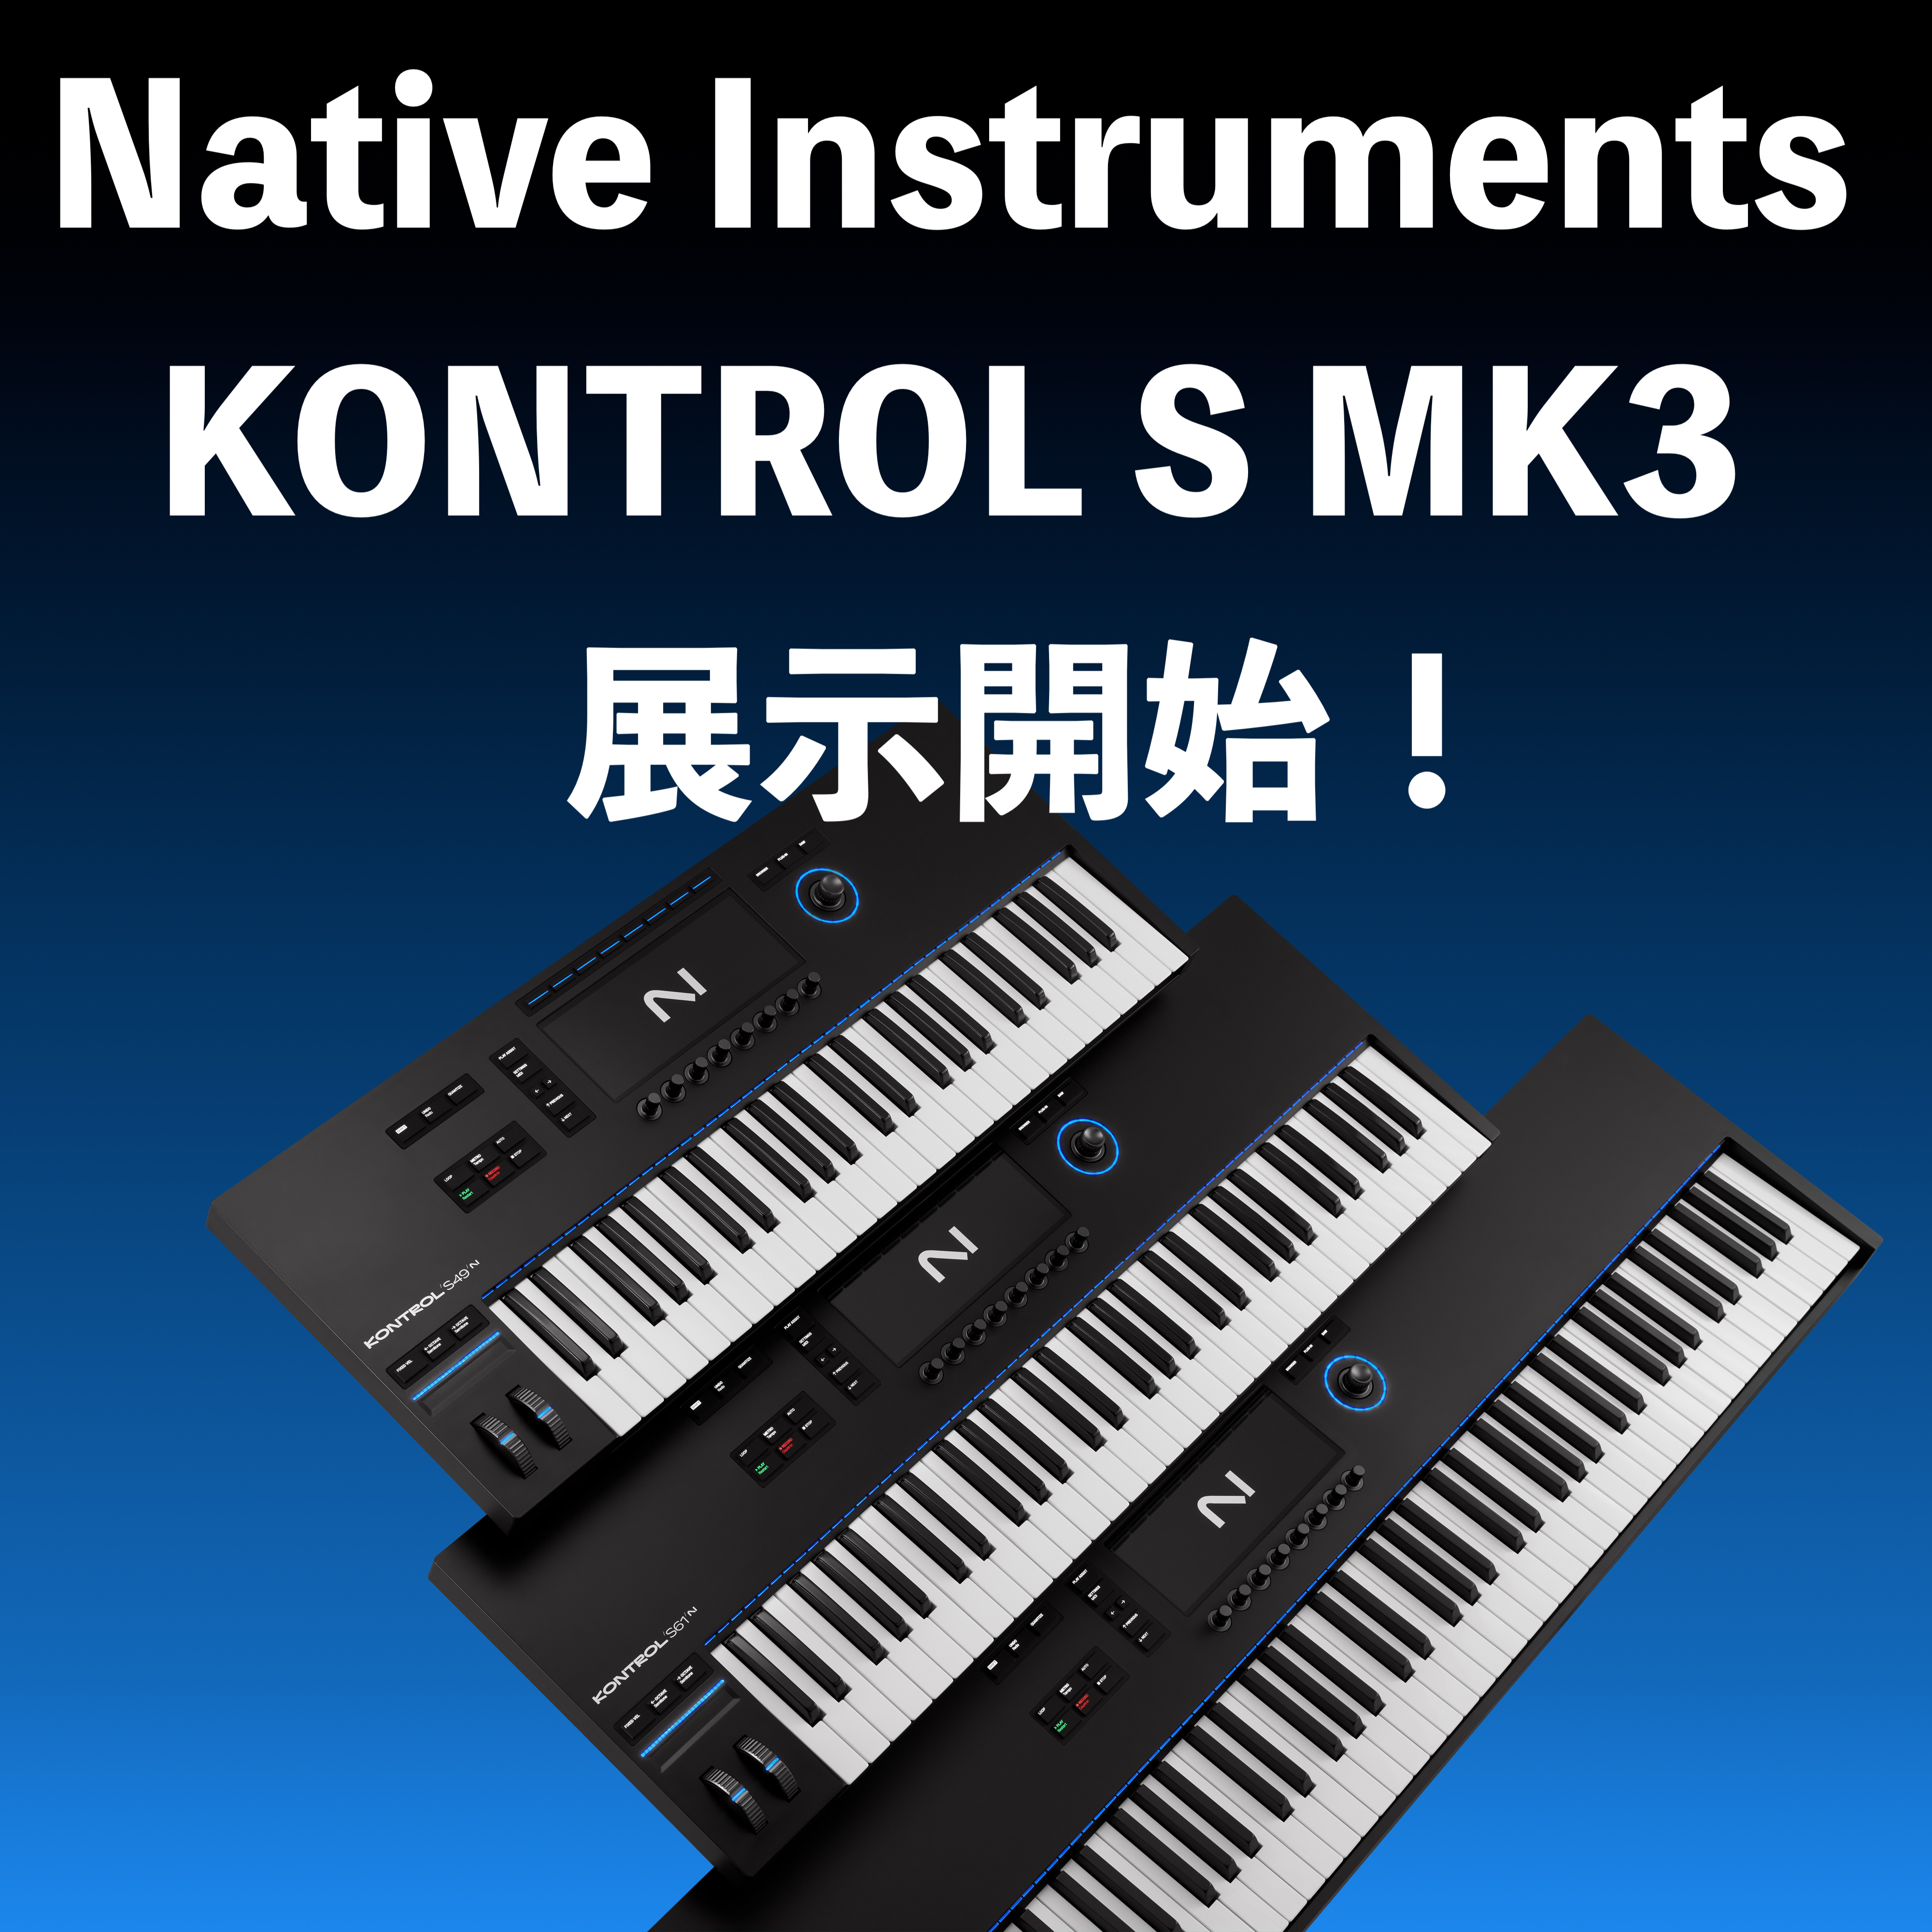 プロアマ問わず多くのアーティストやエンジニアから支持を得るNative Instruments社の人気MIDI鍵盤KOMPLETE KONTROL Sシリーズが第3世代モデルへリニューアル!!2014年に初代モデル、2017年に第2世代モデル（MK2)がそれぞれリリースされ、その洗練された見た目と使 […]